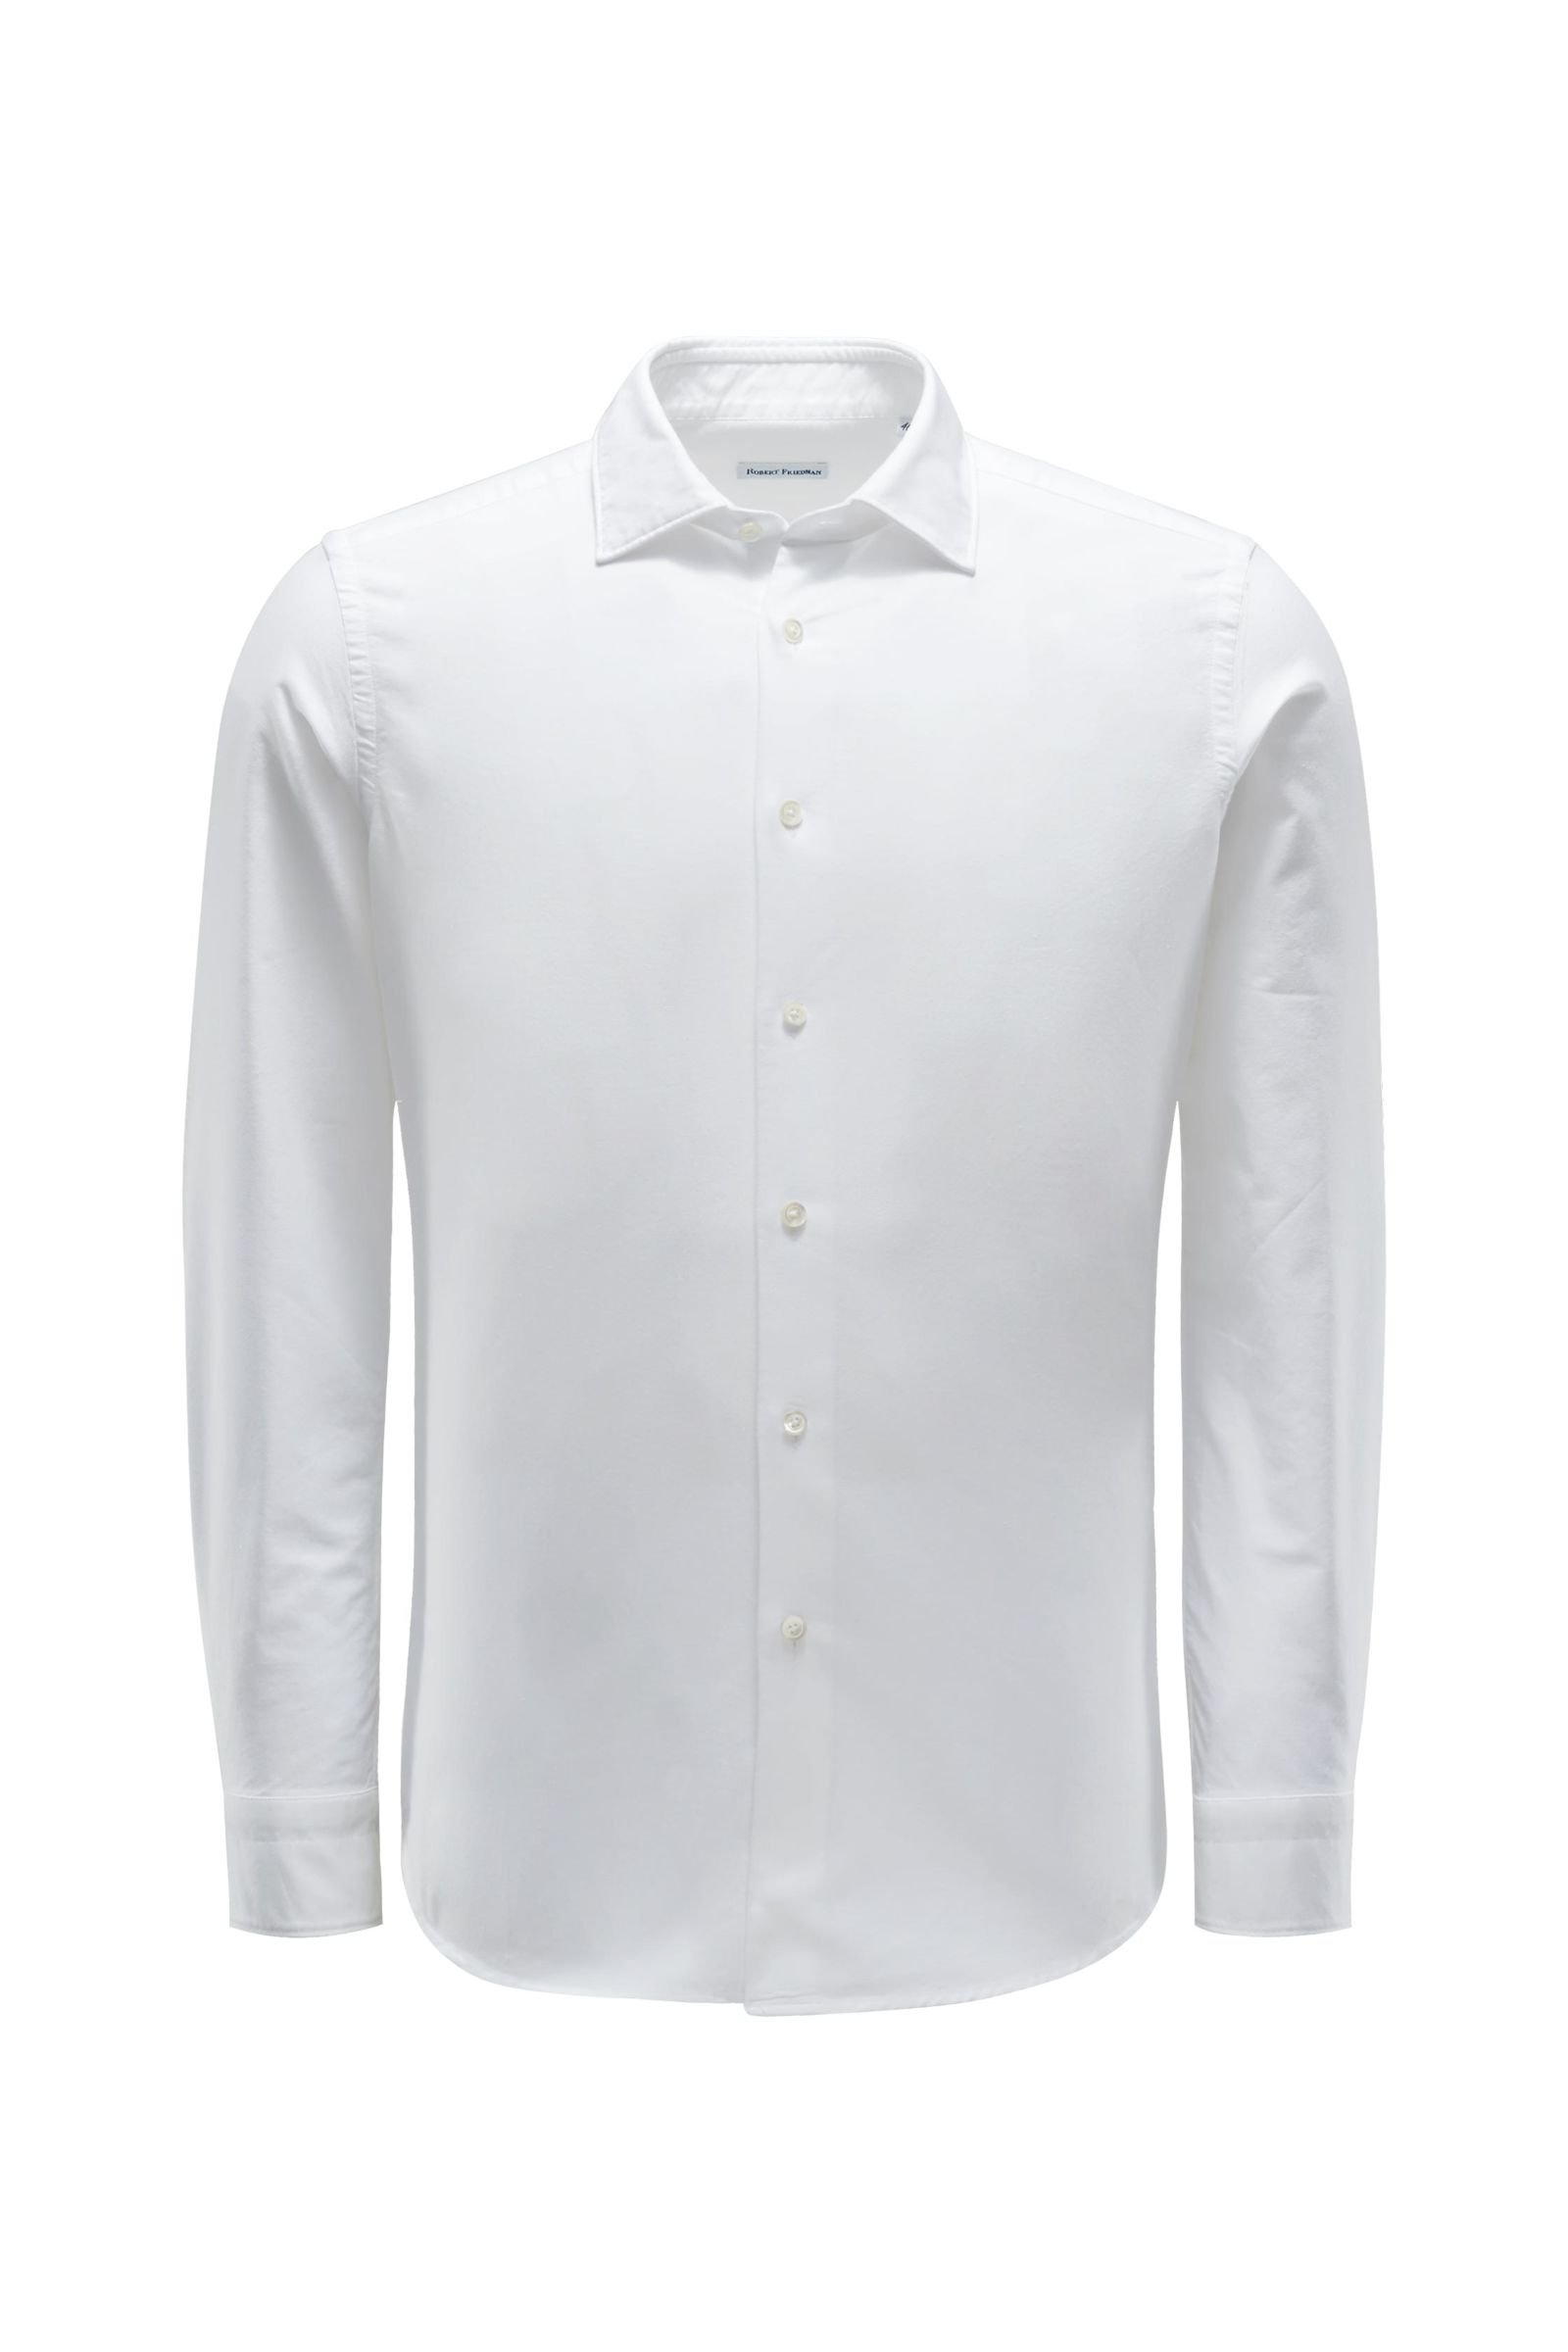 Oxford shirt 'Leo' slim collar white